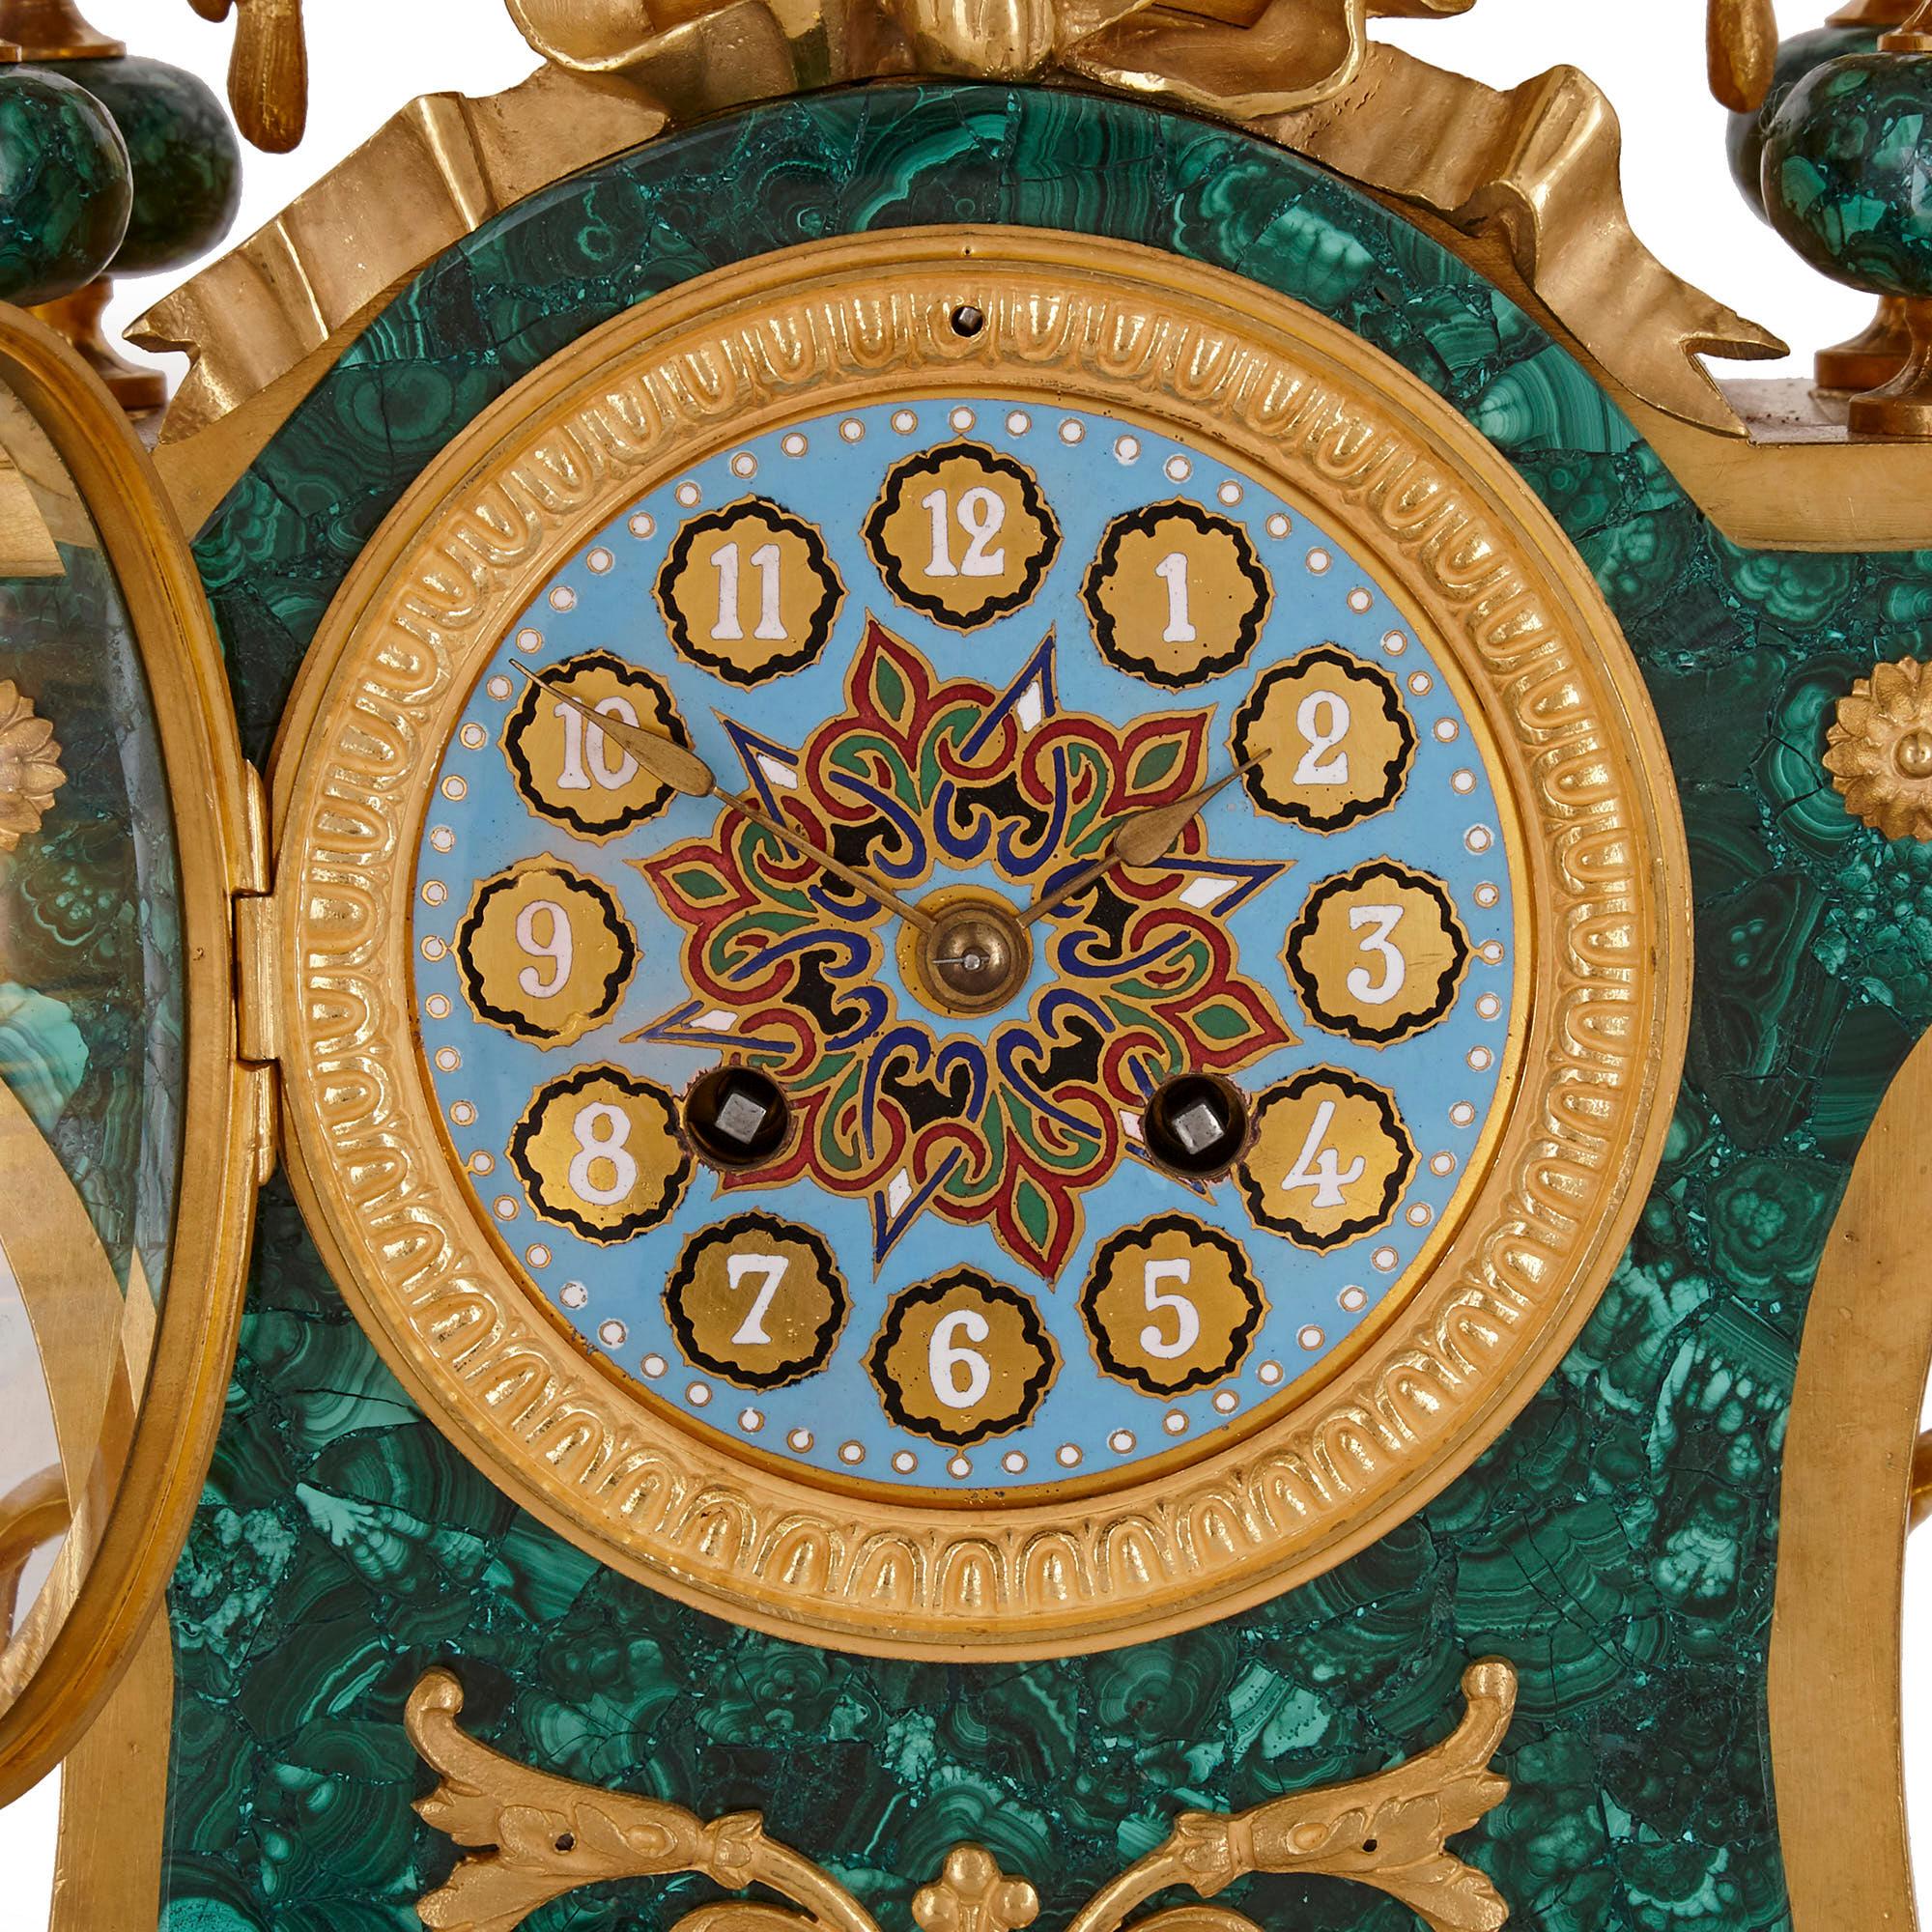 Ensemble de pendules à trois pièces de style néoclassique de l'époque Napoléon III.
Français, 19ème siècle
Dimensions : Hauteur 58 cm, largeur 47 cm, profondeur 19 cm

Composé d'une pendule de cheminée et de deux candélabres, cet ensemble de